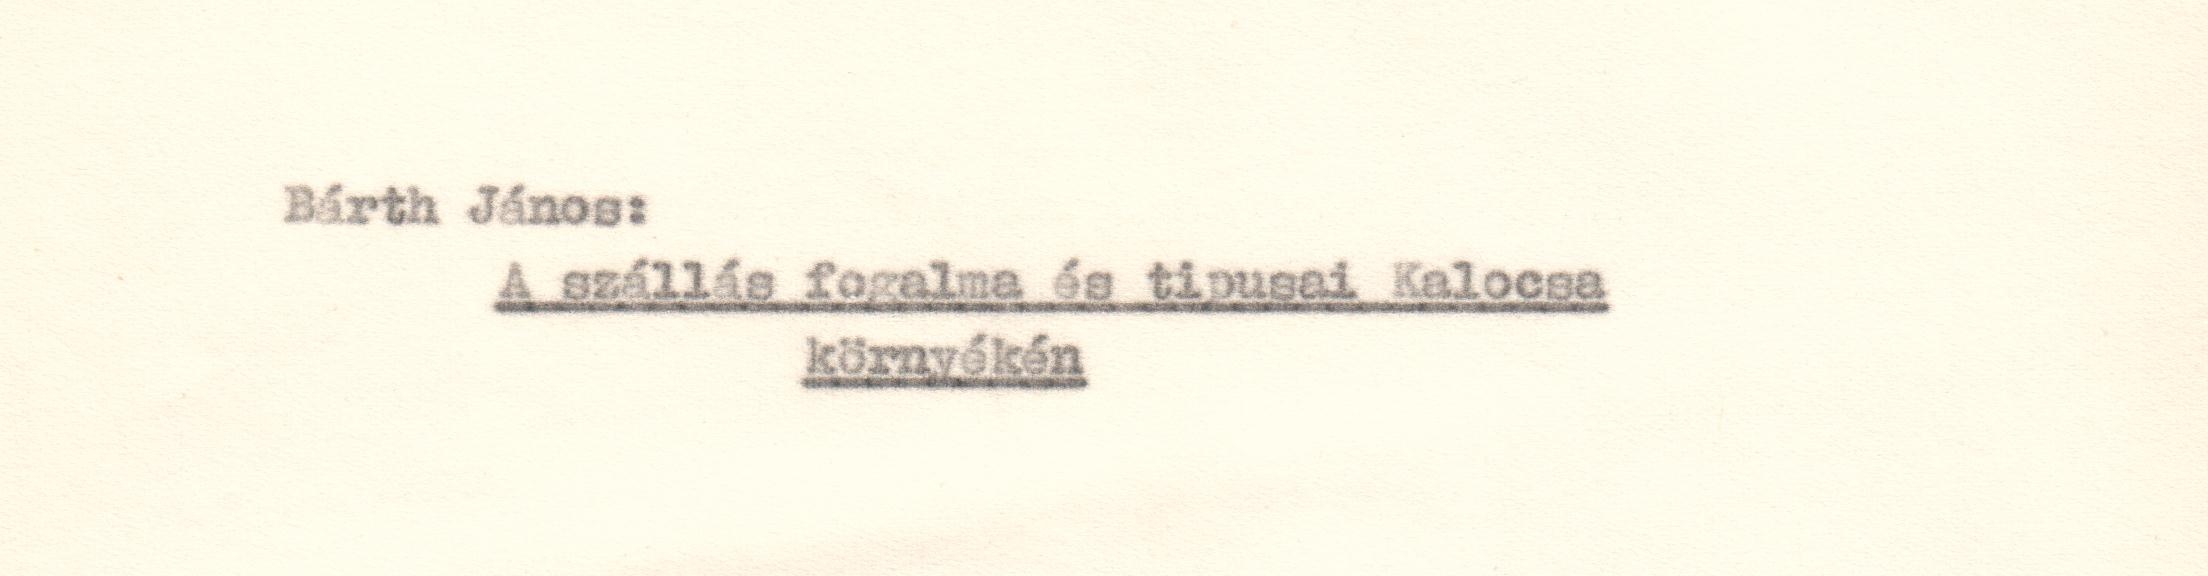 A szállás fogalma és típusai Kalocsa környékén c. tanulmány gépirata. (Viski Károly Múzeum Kalocsa RR-F)